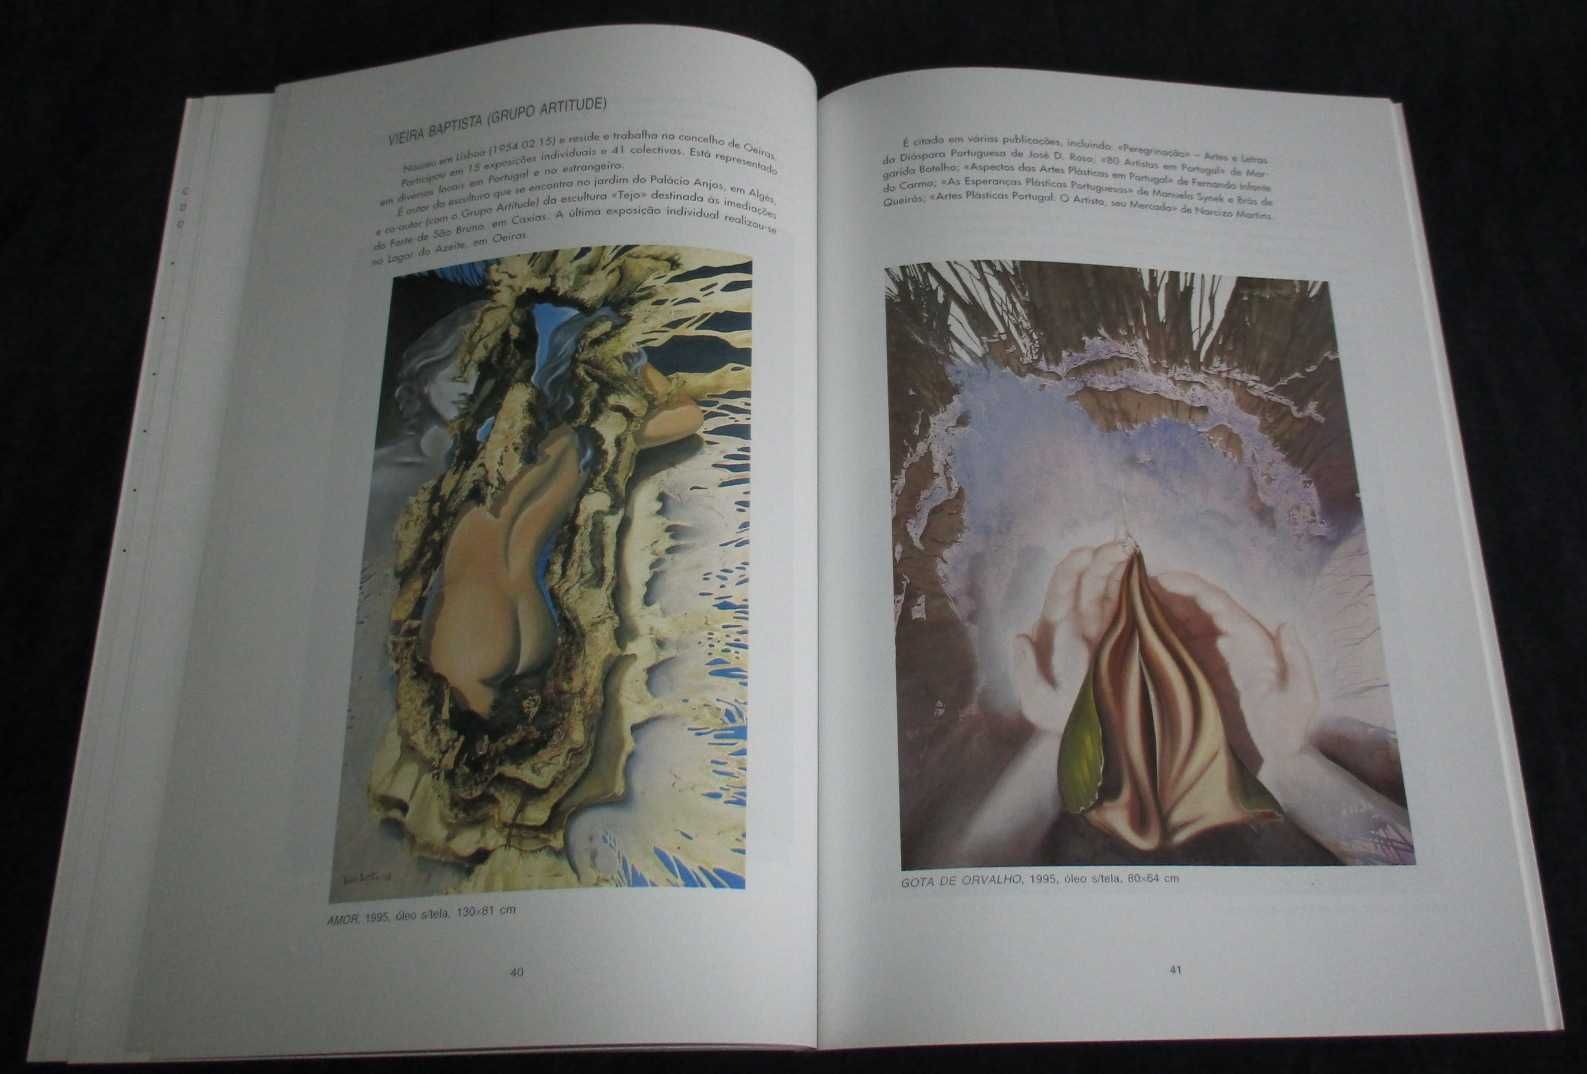 Livro Art' Oeiras Aquilino Ribeiro e Verney